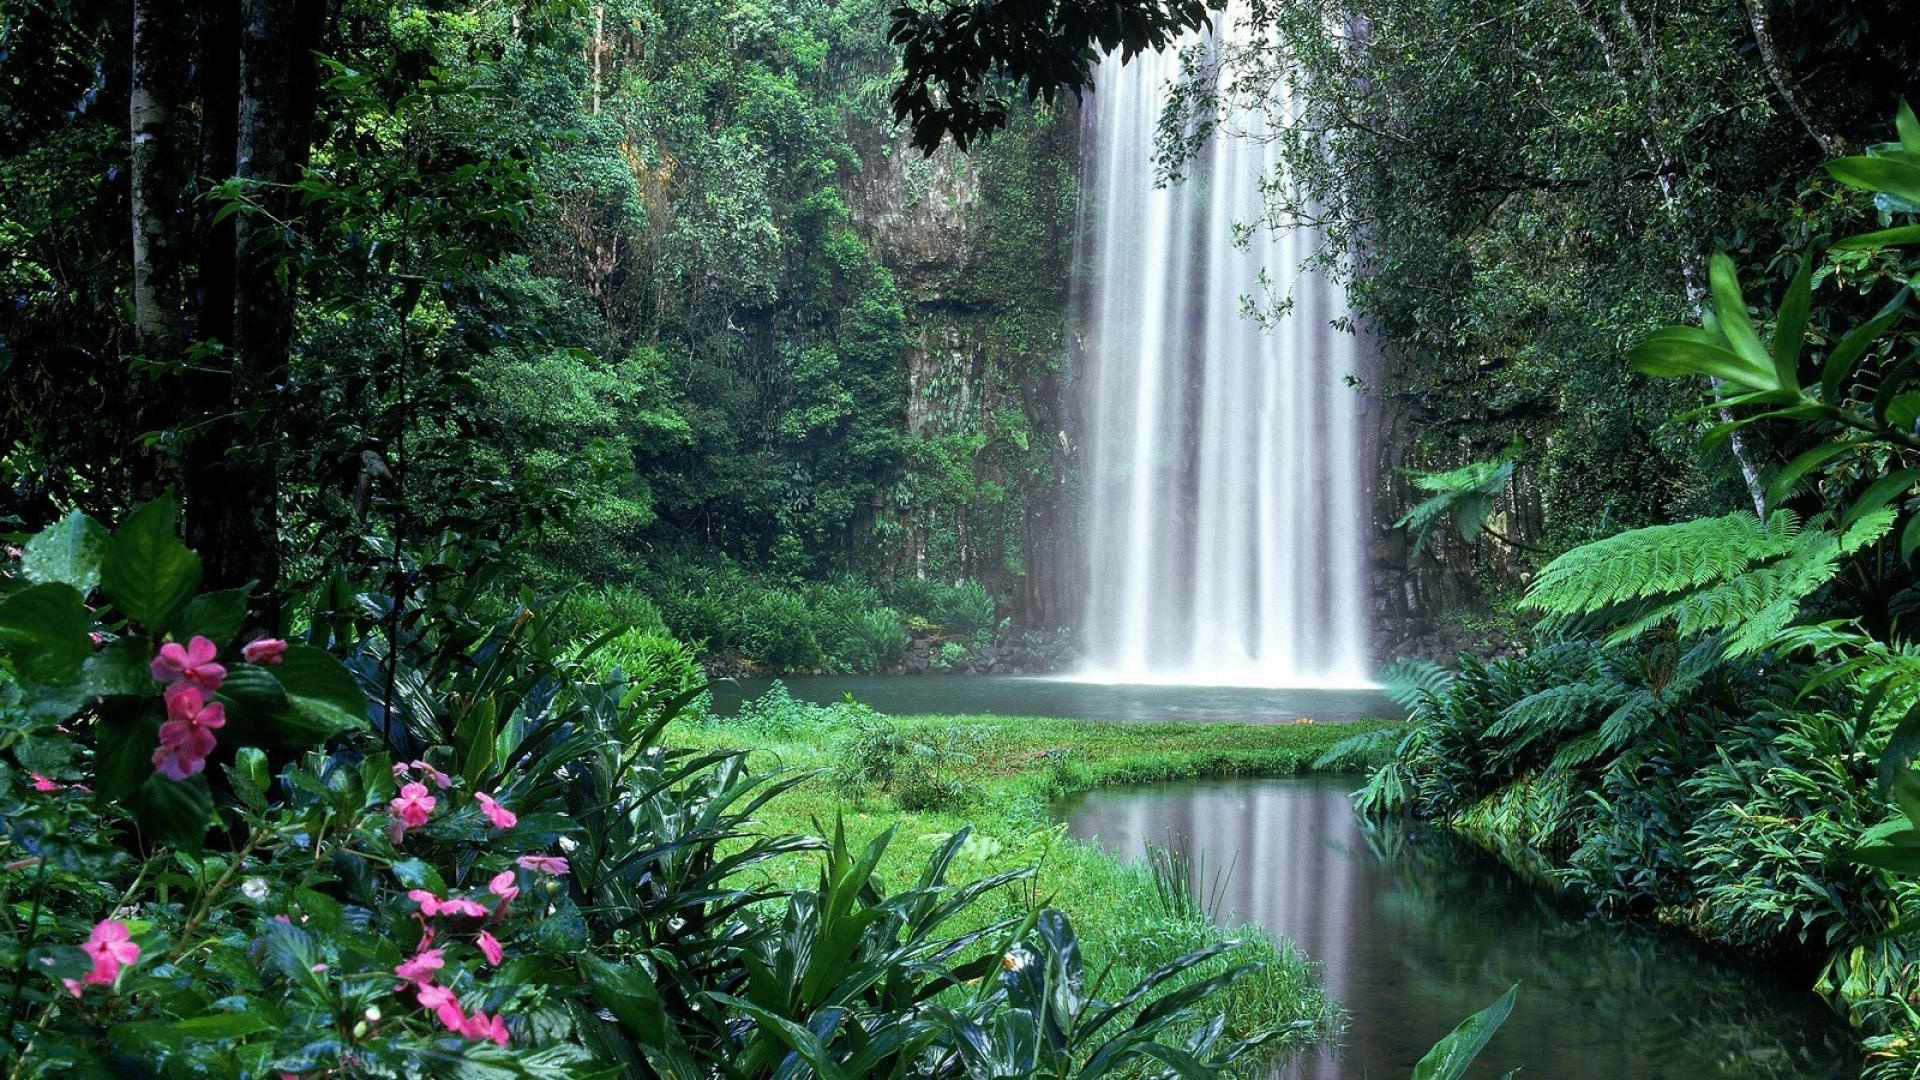 米拉米拉米拉米拉瀑布, 自然景观, 人体内的水, 性质, 水资源 壁纸 1920x1080 允许